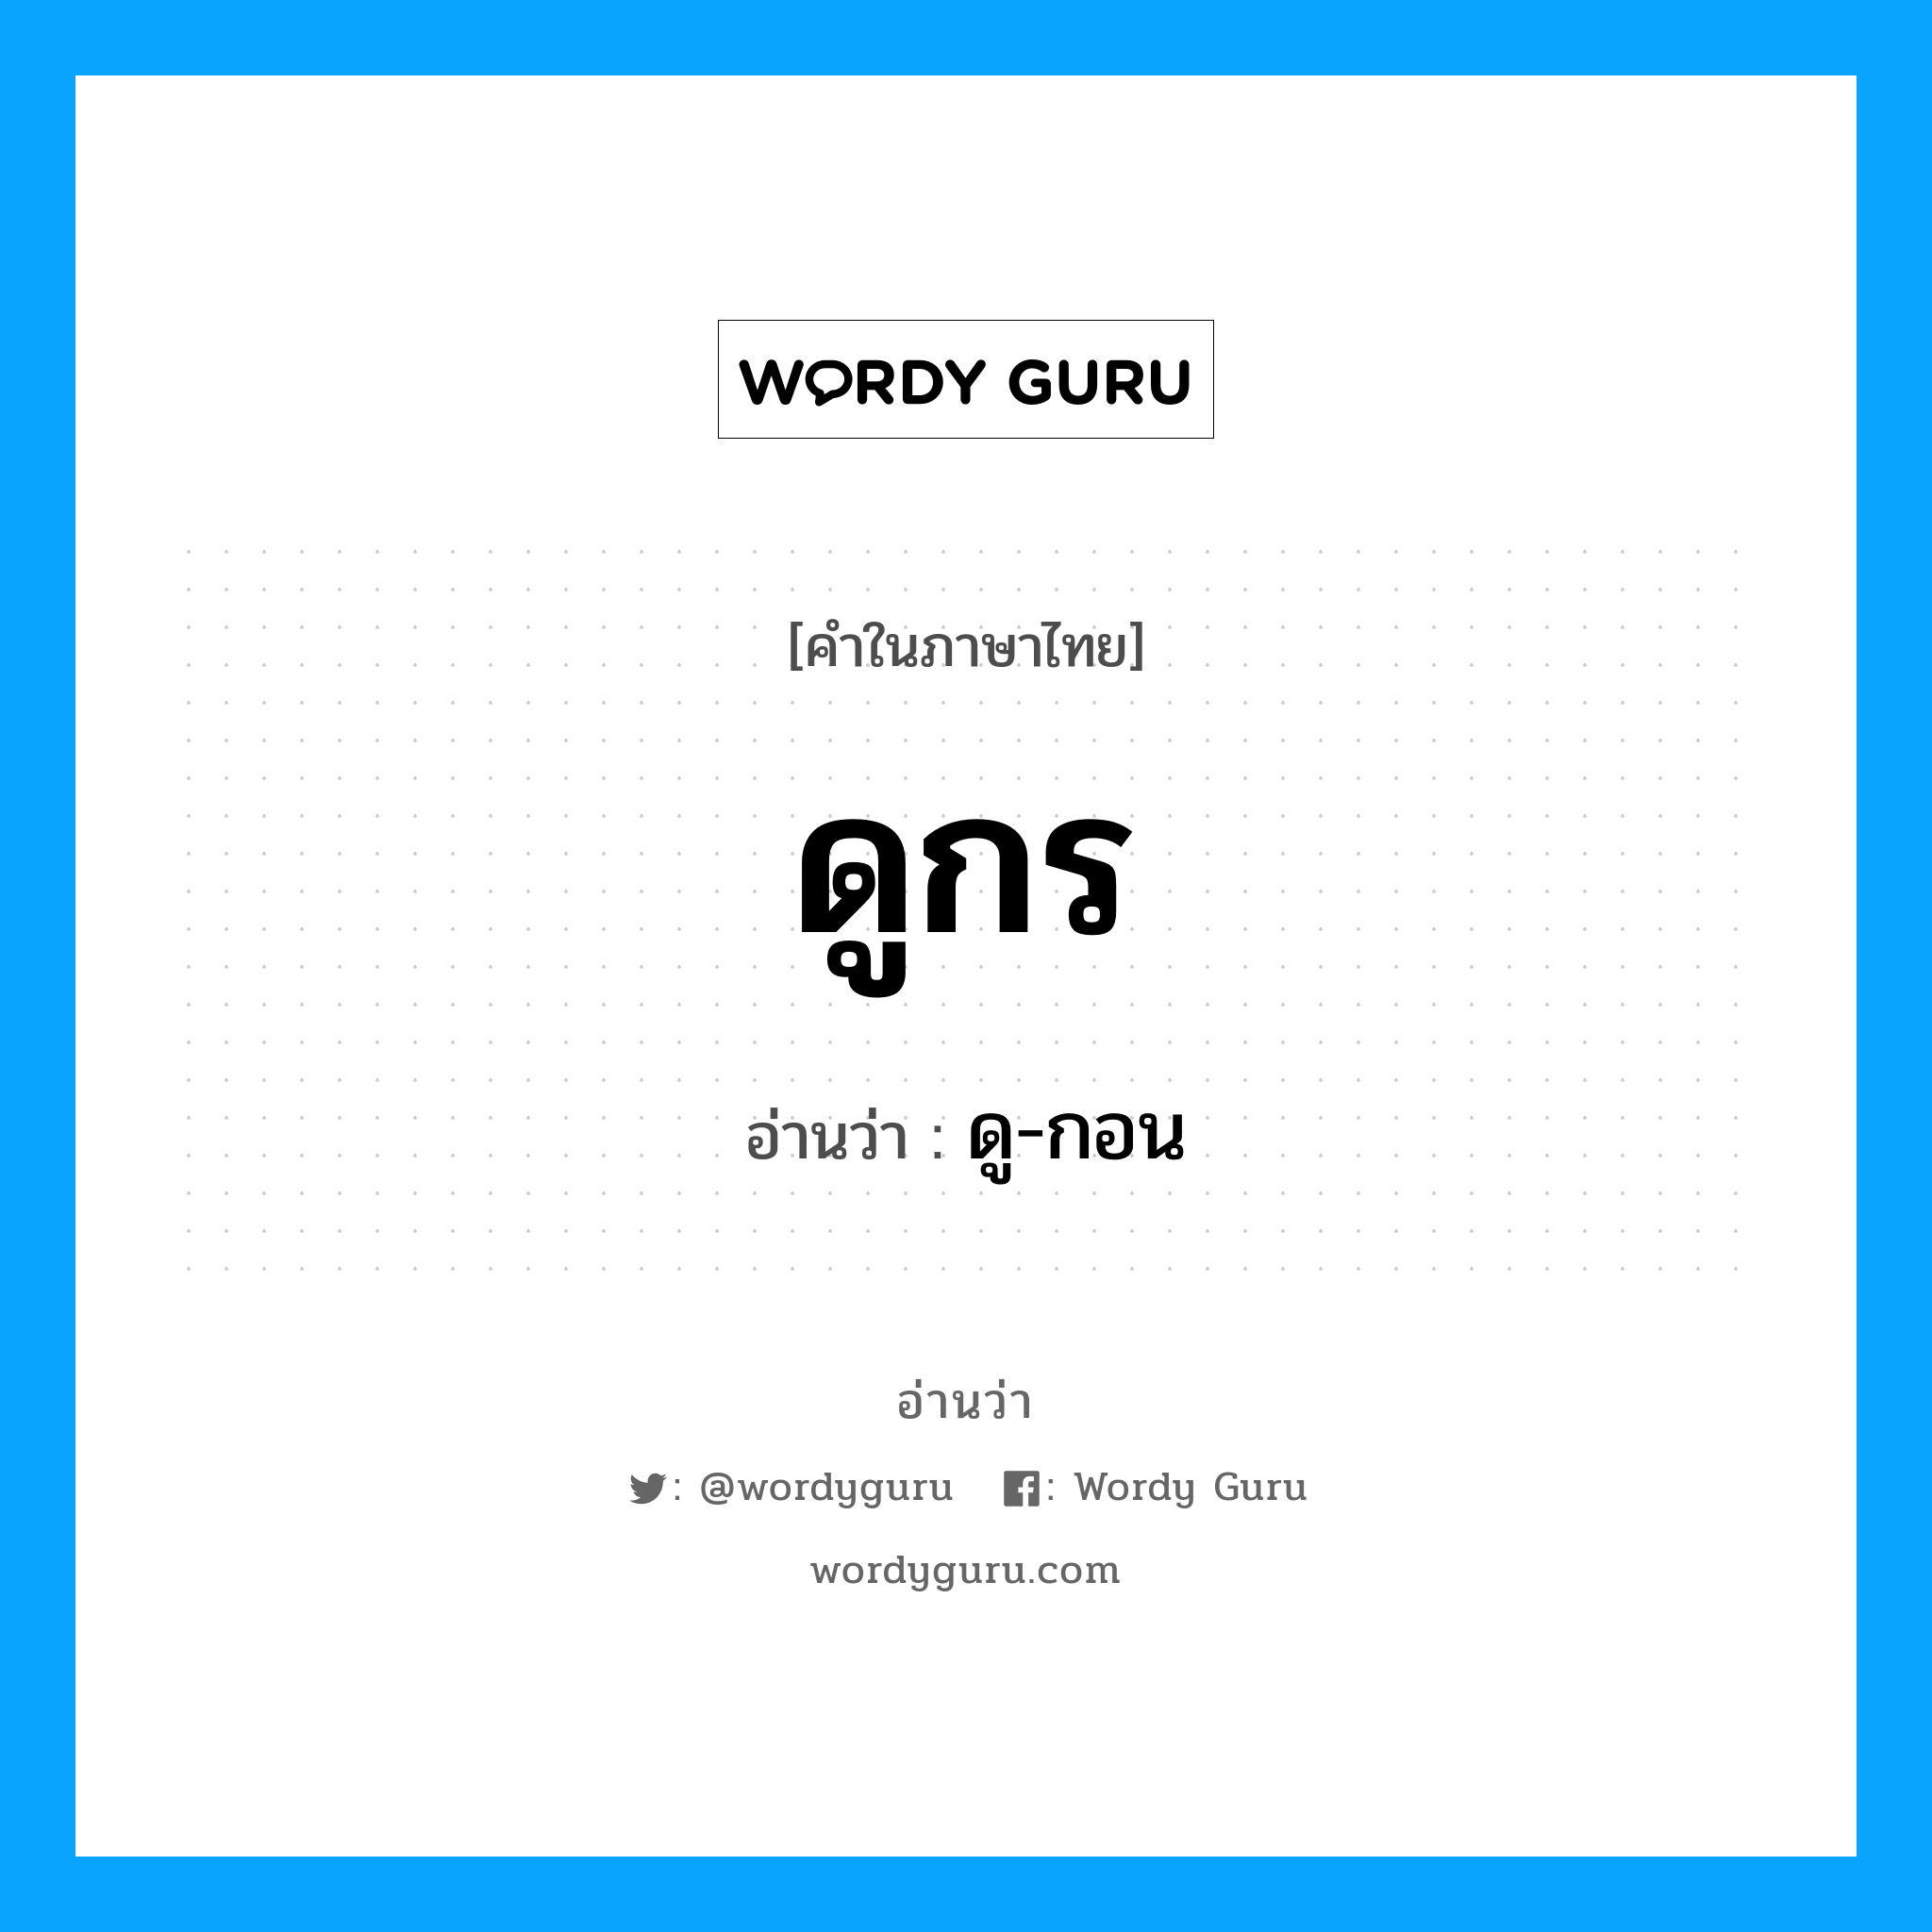 ดู-กอน เป็นคำอ่านของคำไหน?, คำในภาษาไทย ดู-กอน อ่านว่า ดูกร